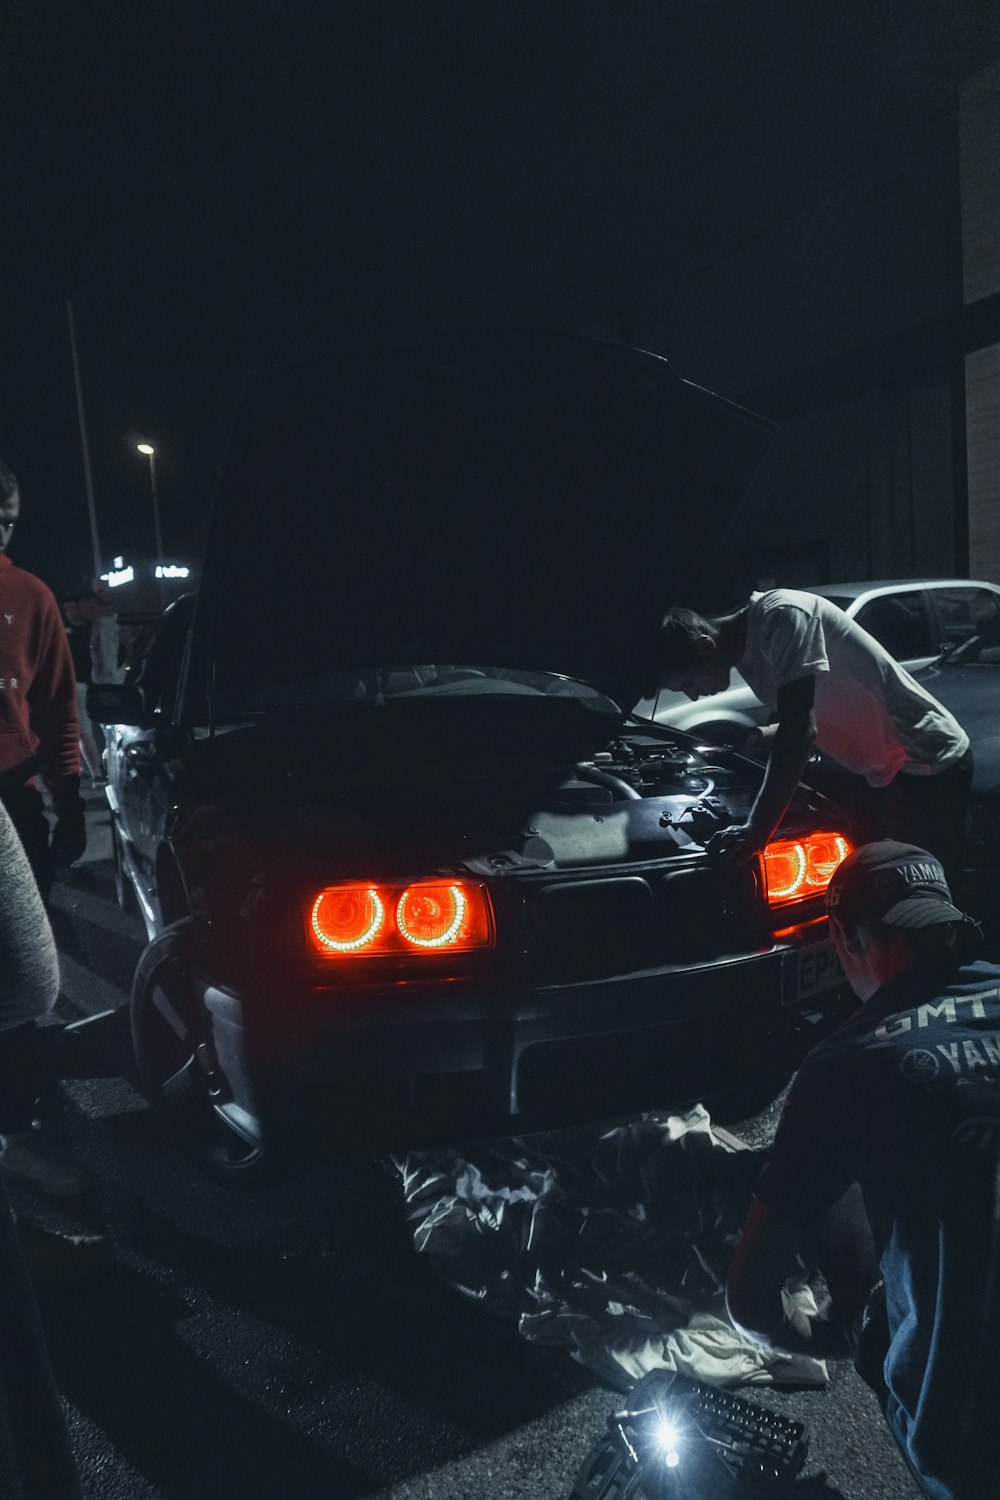 Mann in roter Jacke neben schwarzem Auto